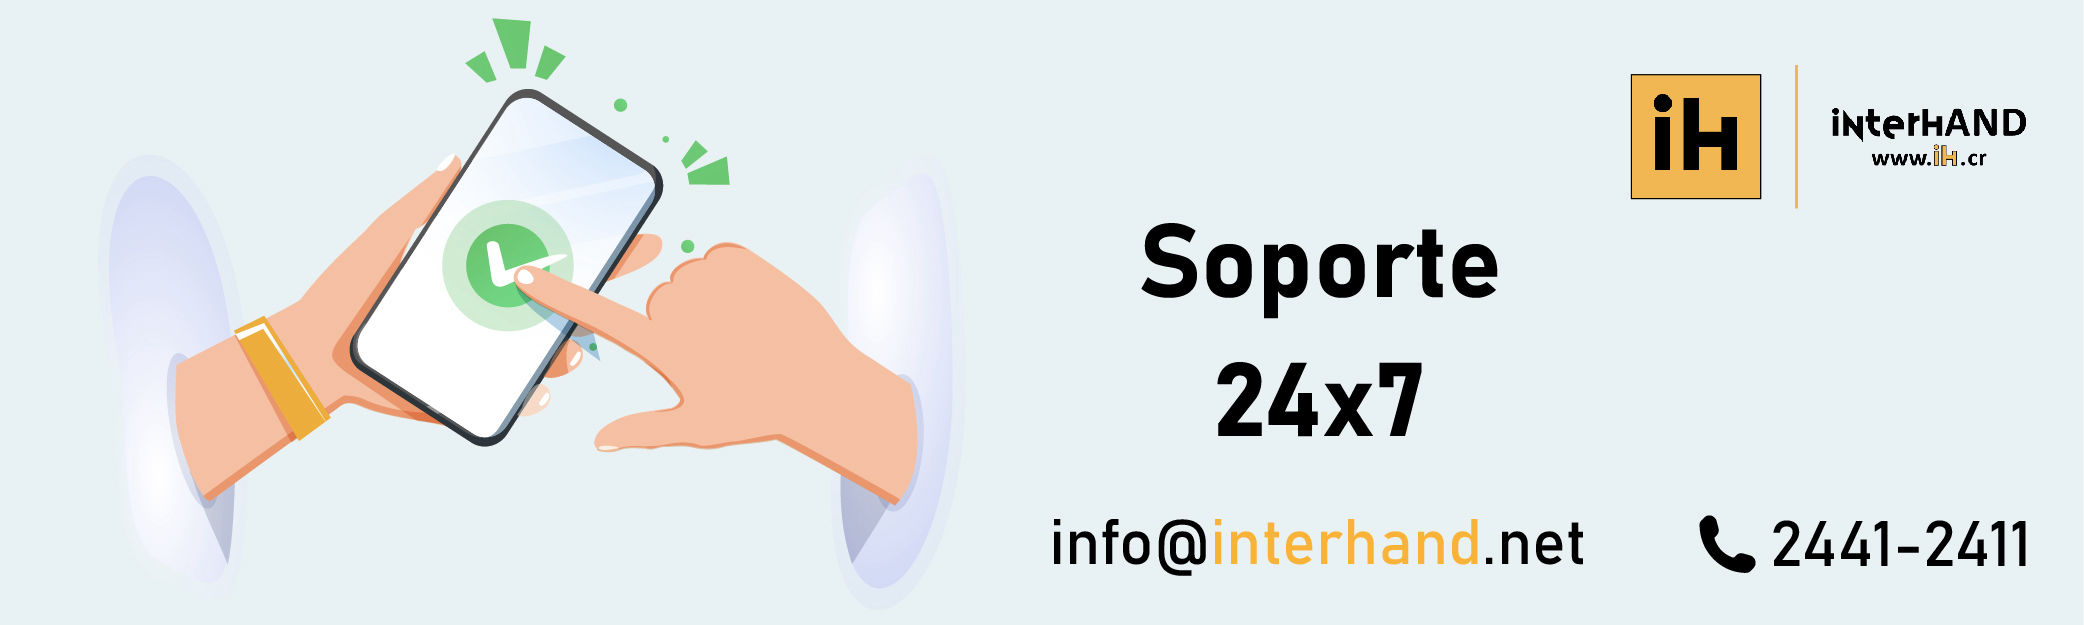 Soporte InterHAND S.A.